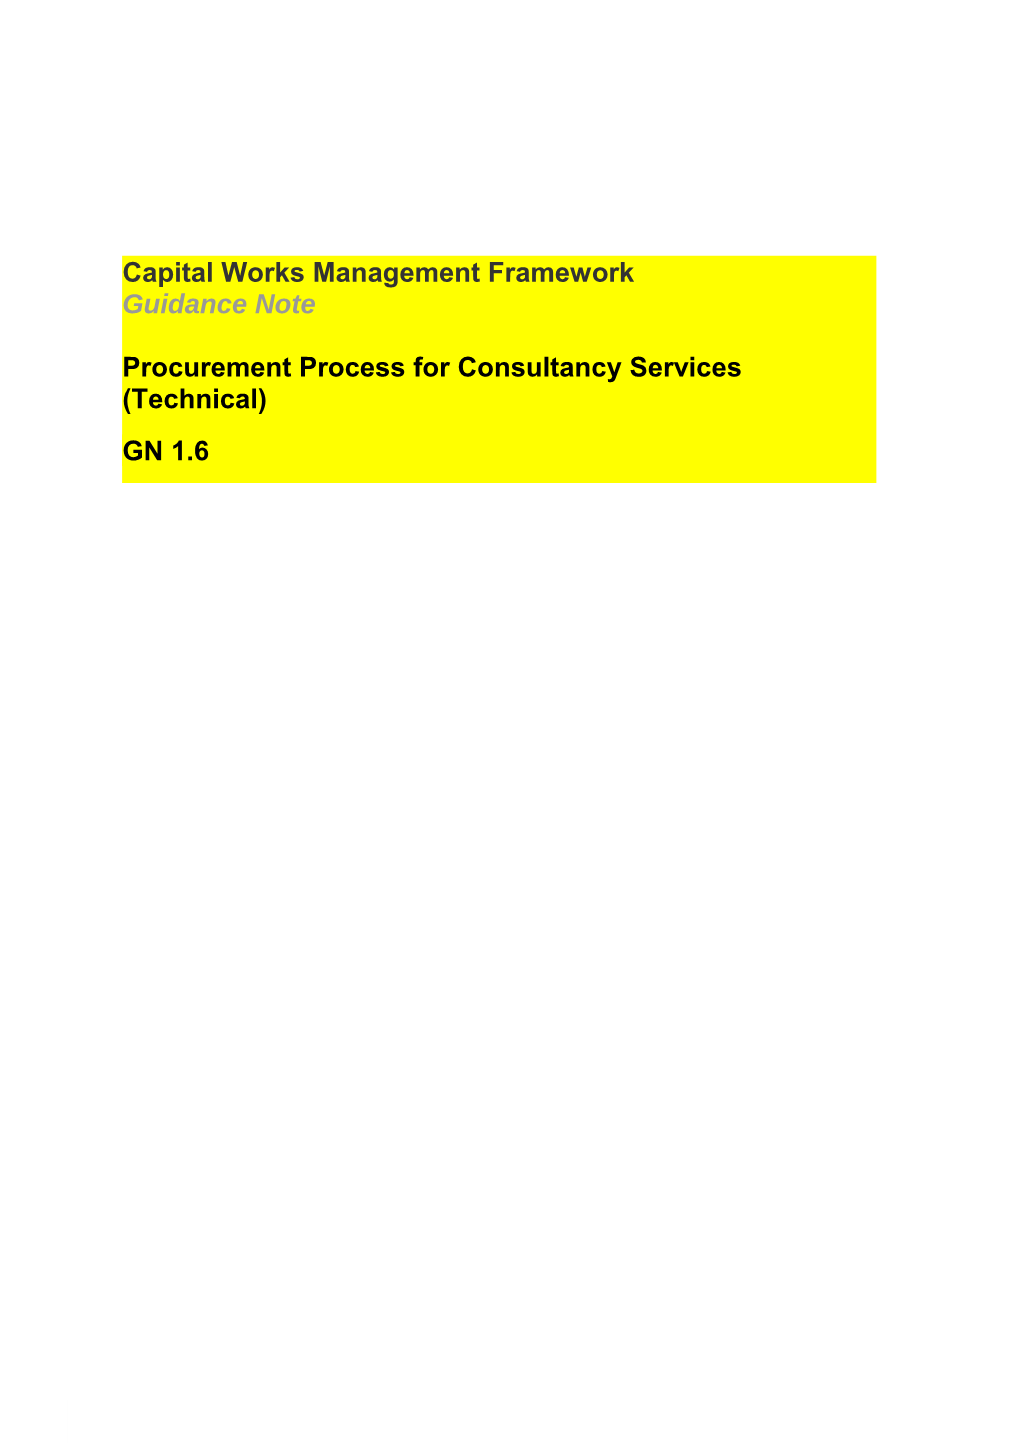 Procurement Process for Consultancy Services